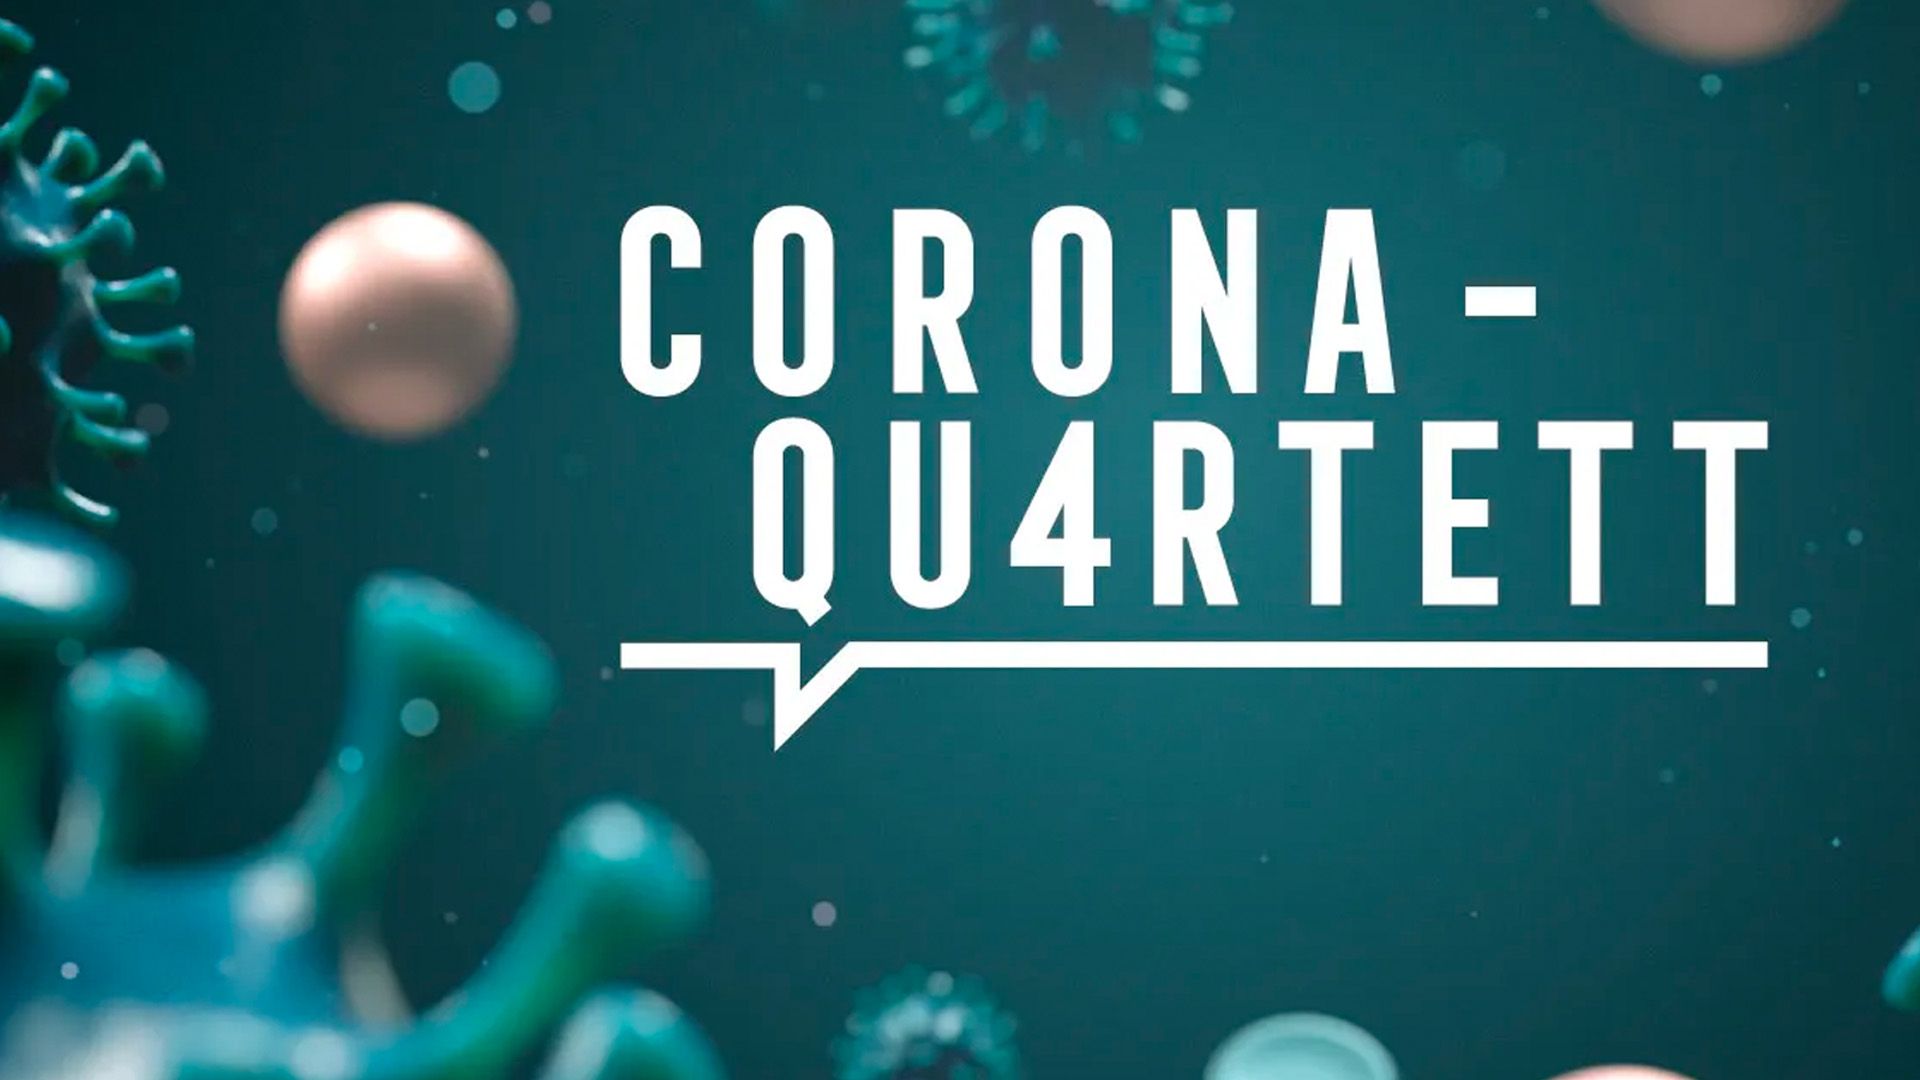 Corona-Quartett